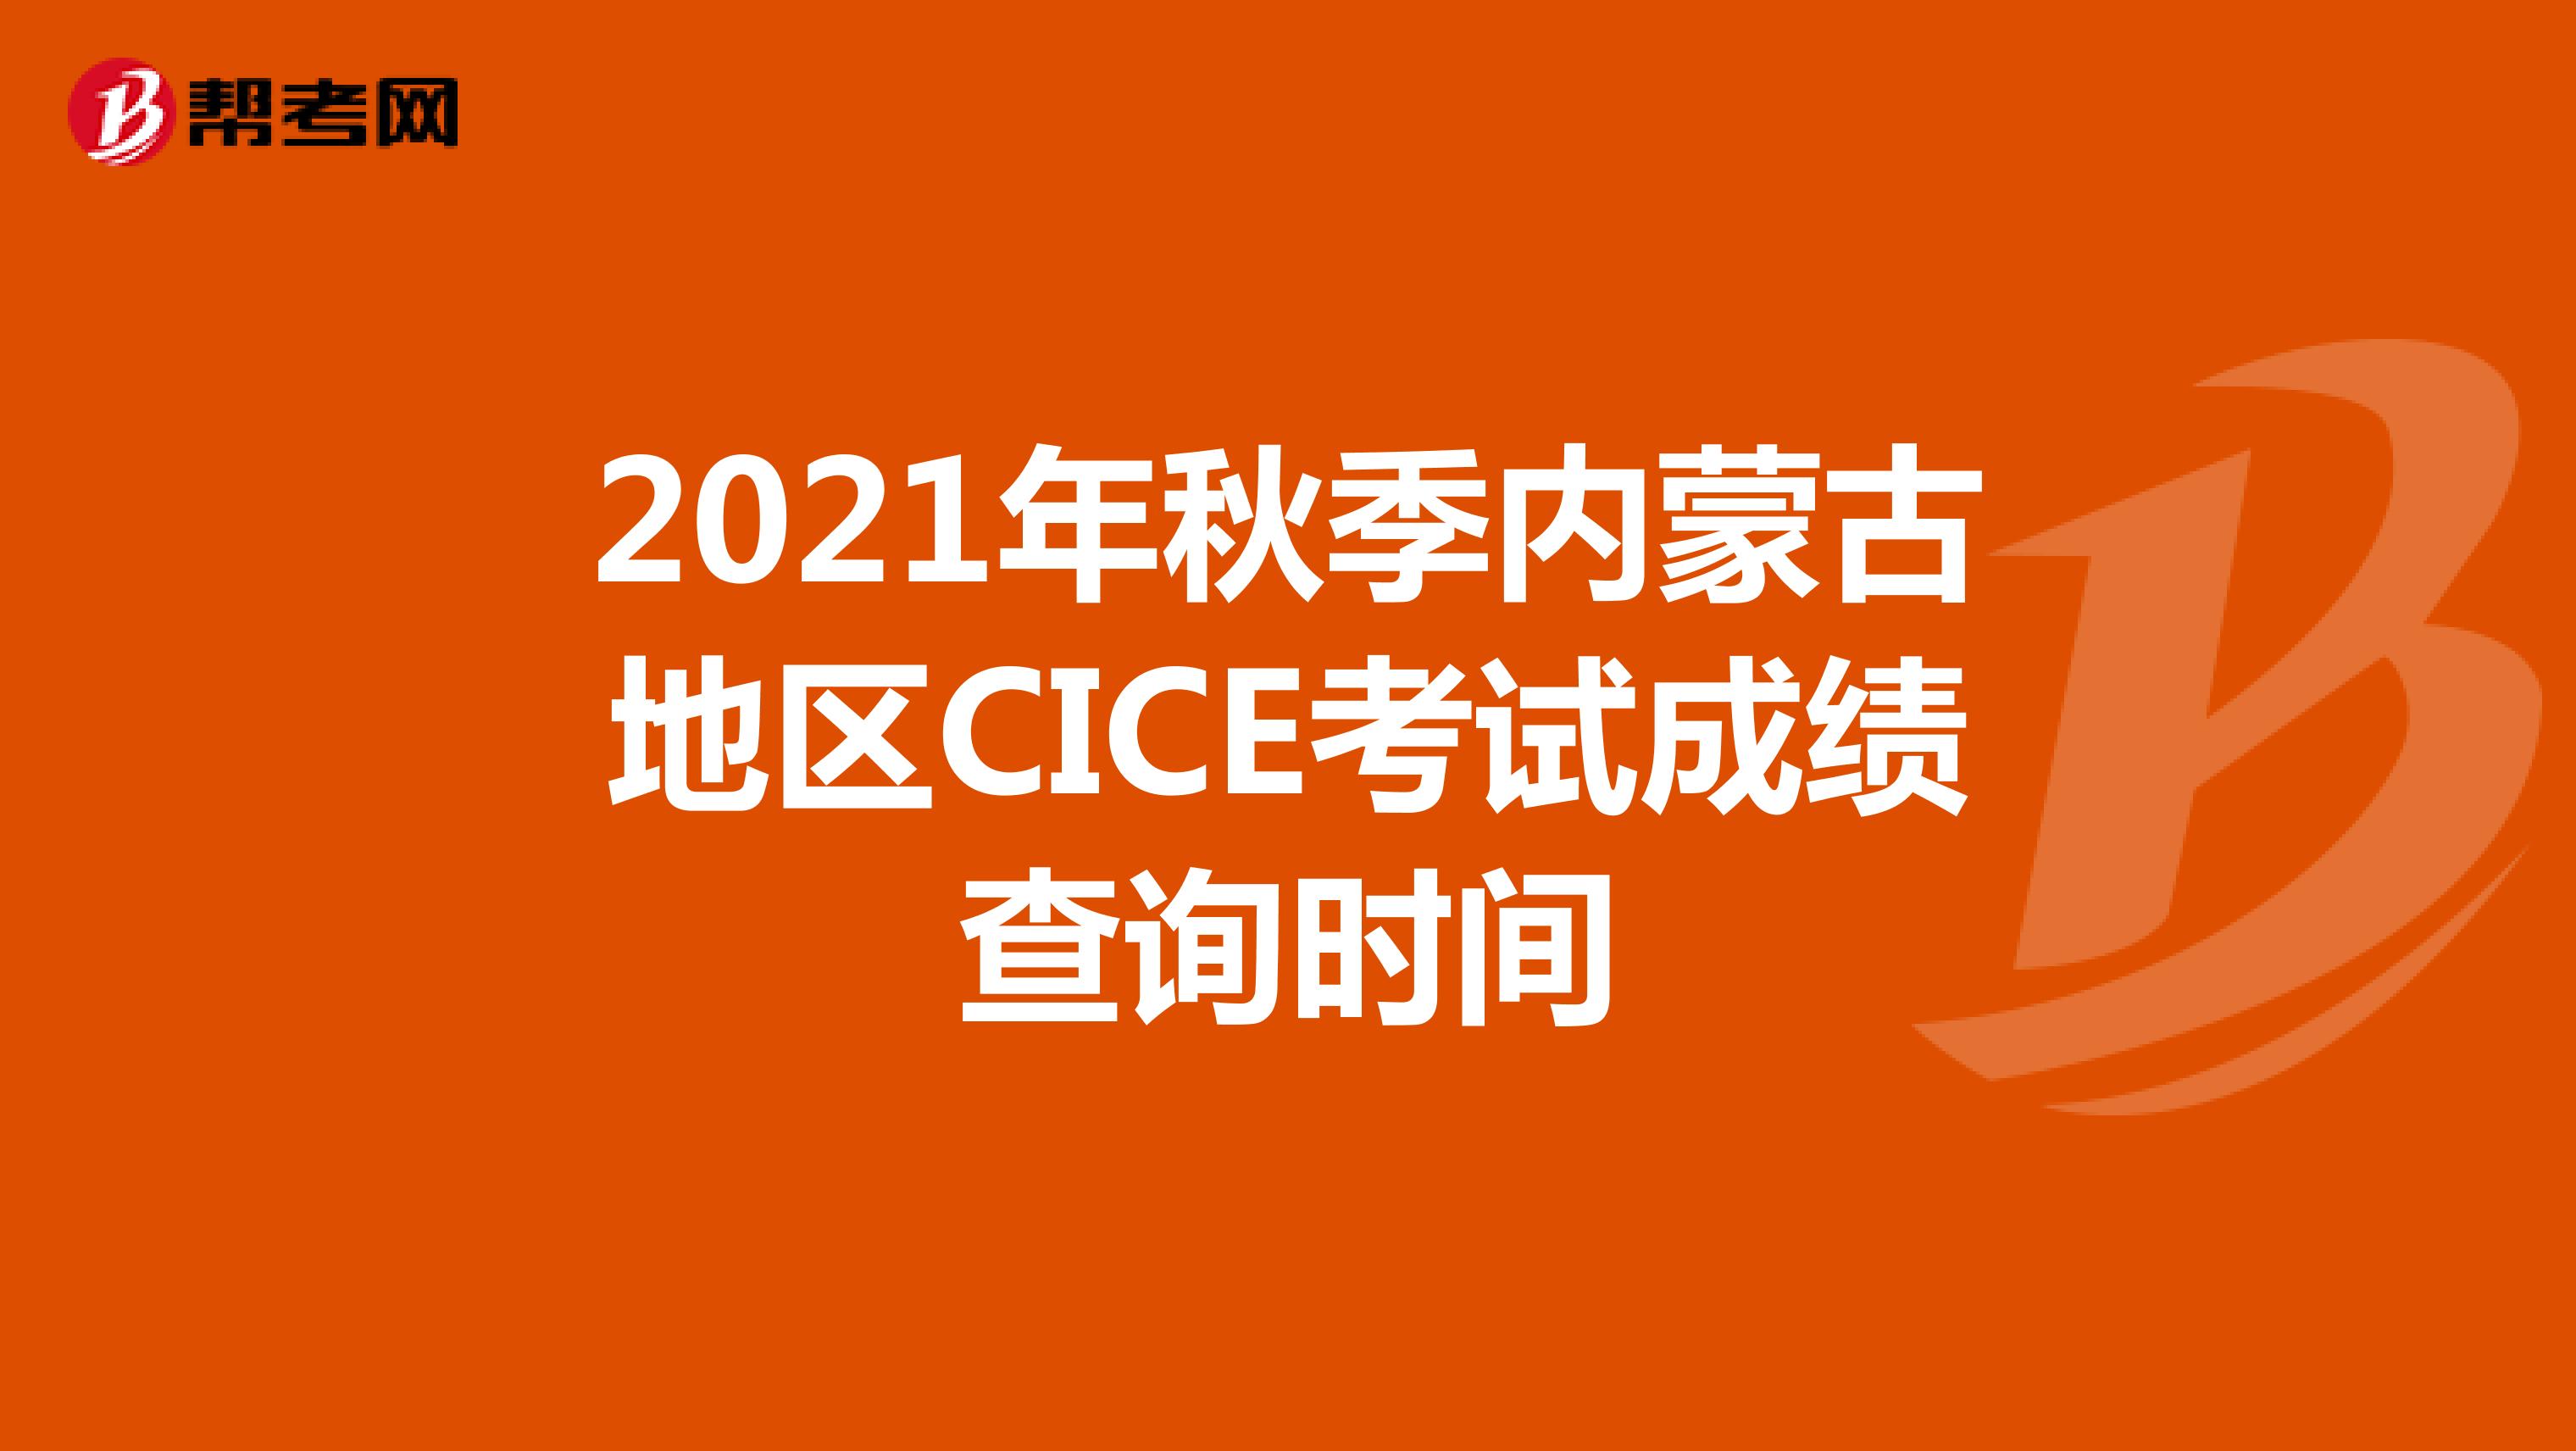 2021年秋季内蒙古地区CICE考试成绩查询时间